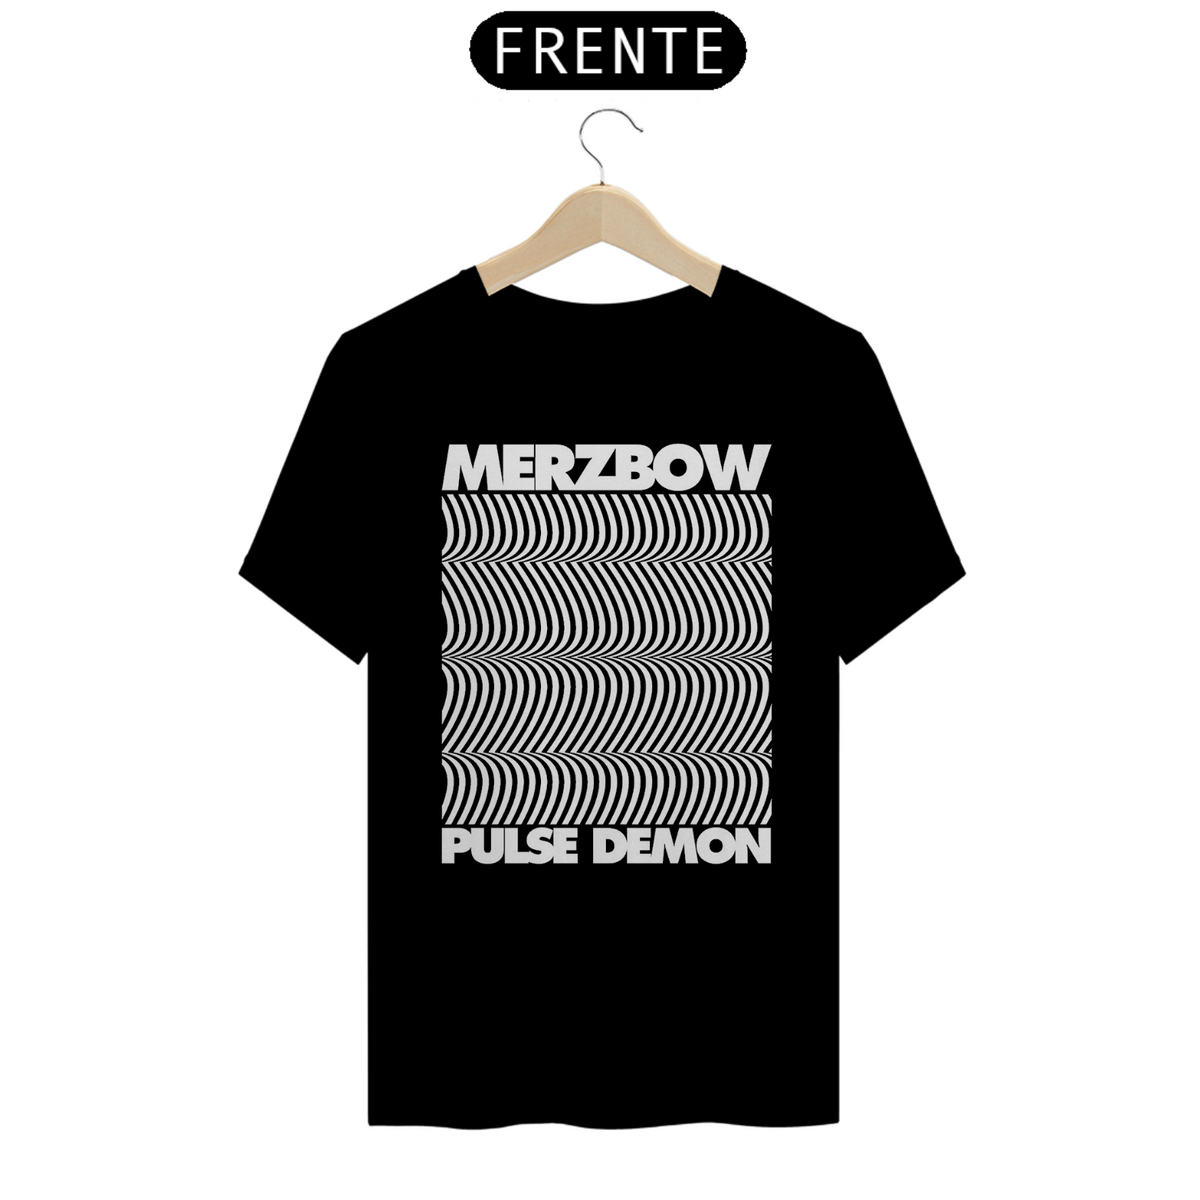 Nome do produto: Merzbow